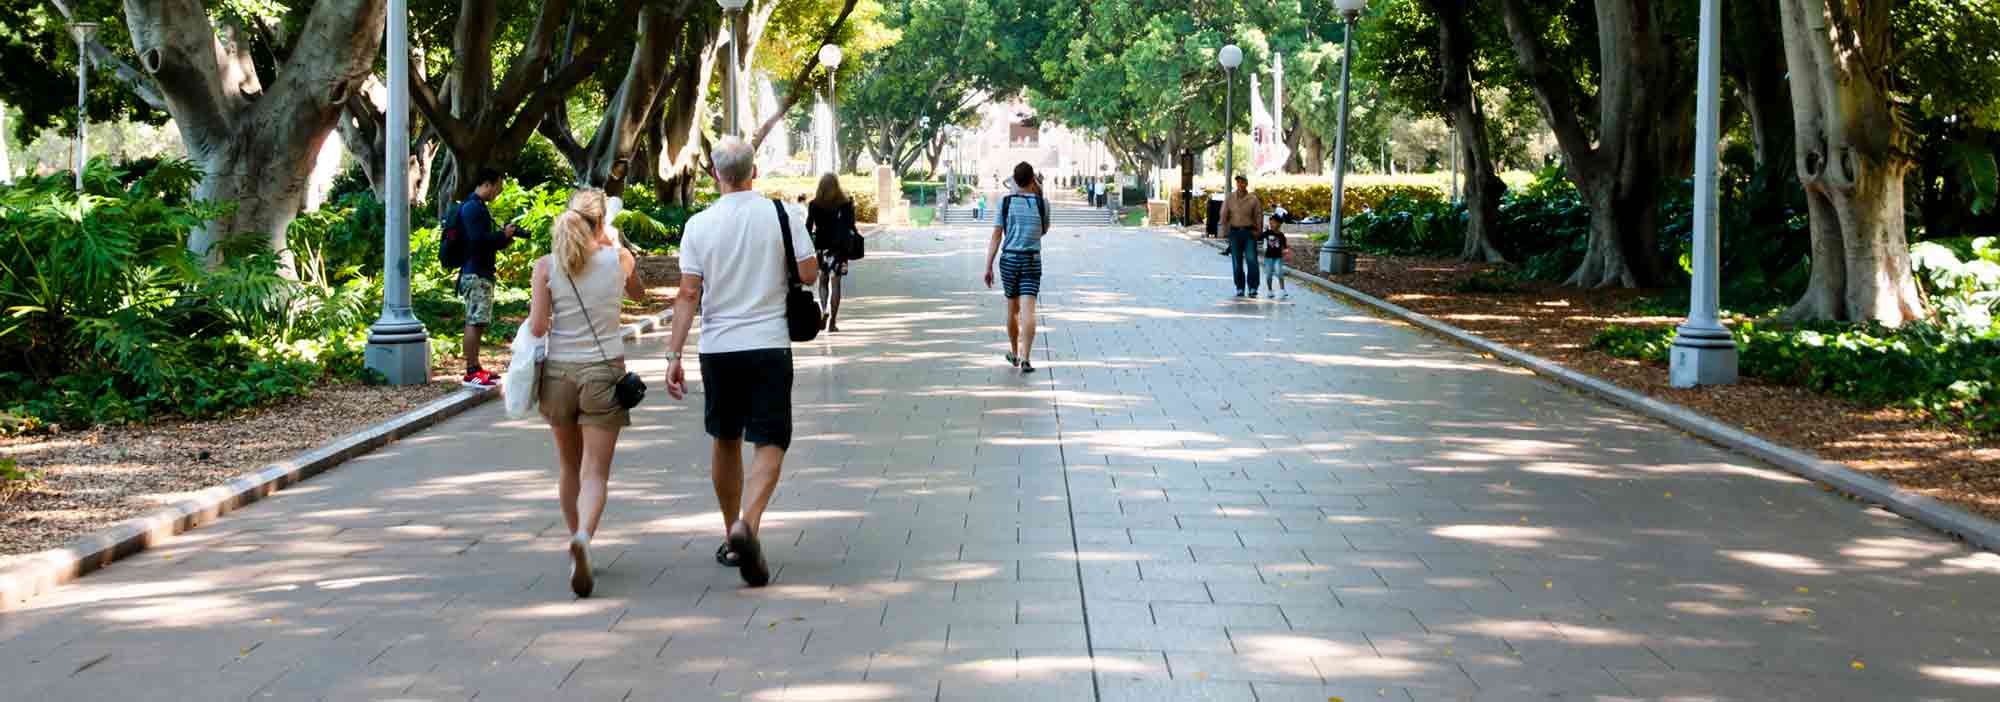 People walking in Hyde Park, Sydney